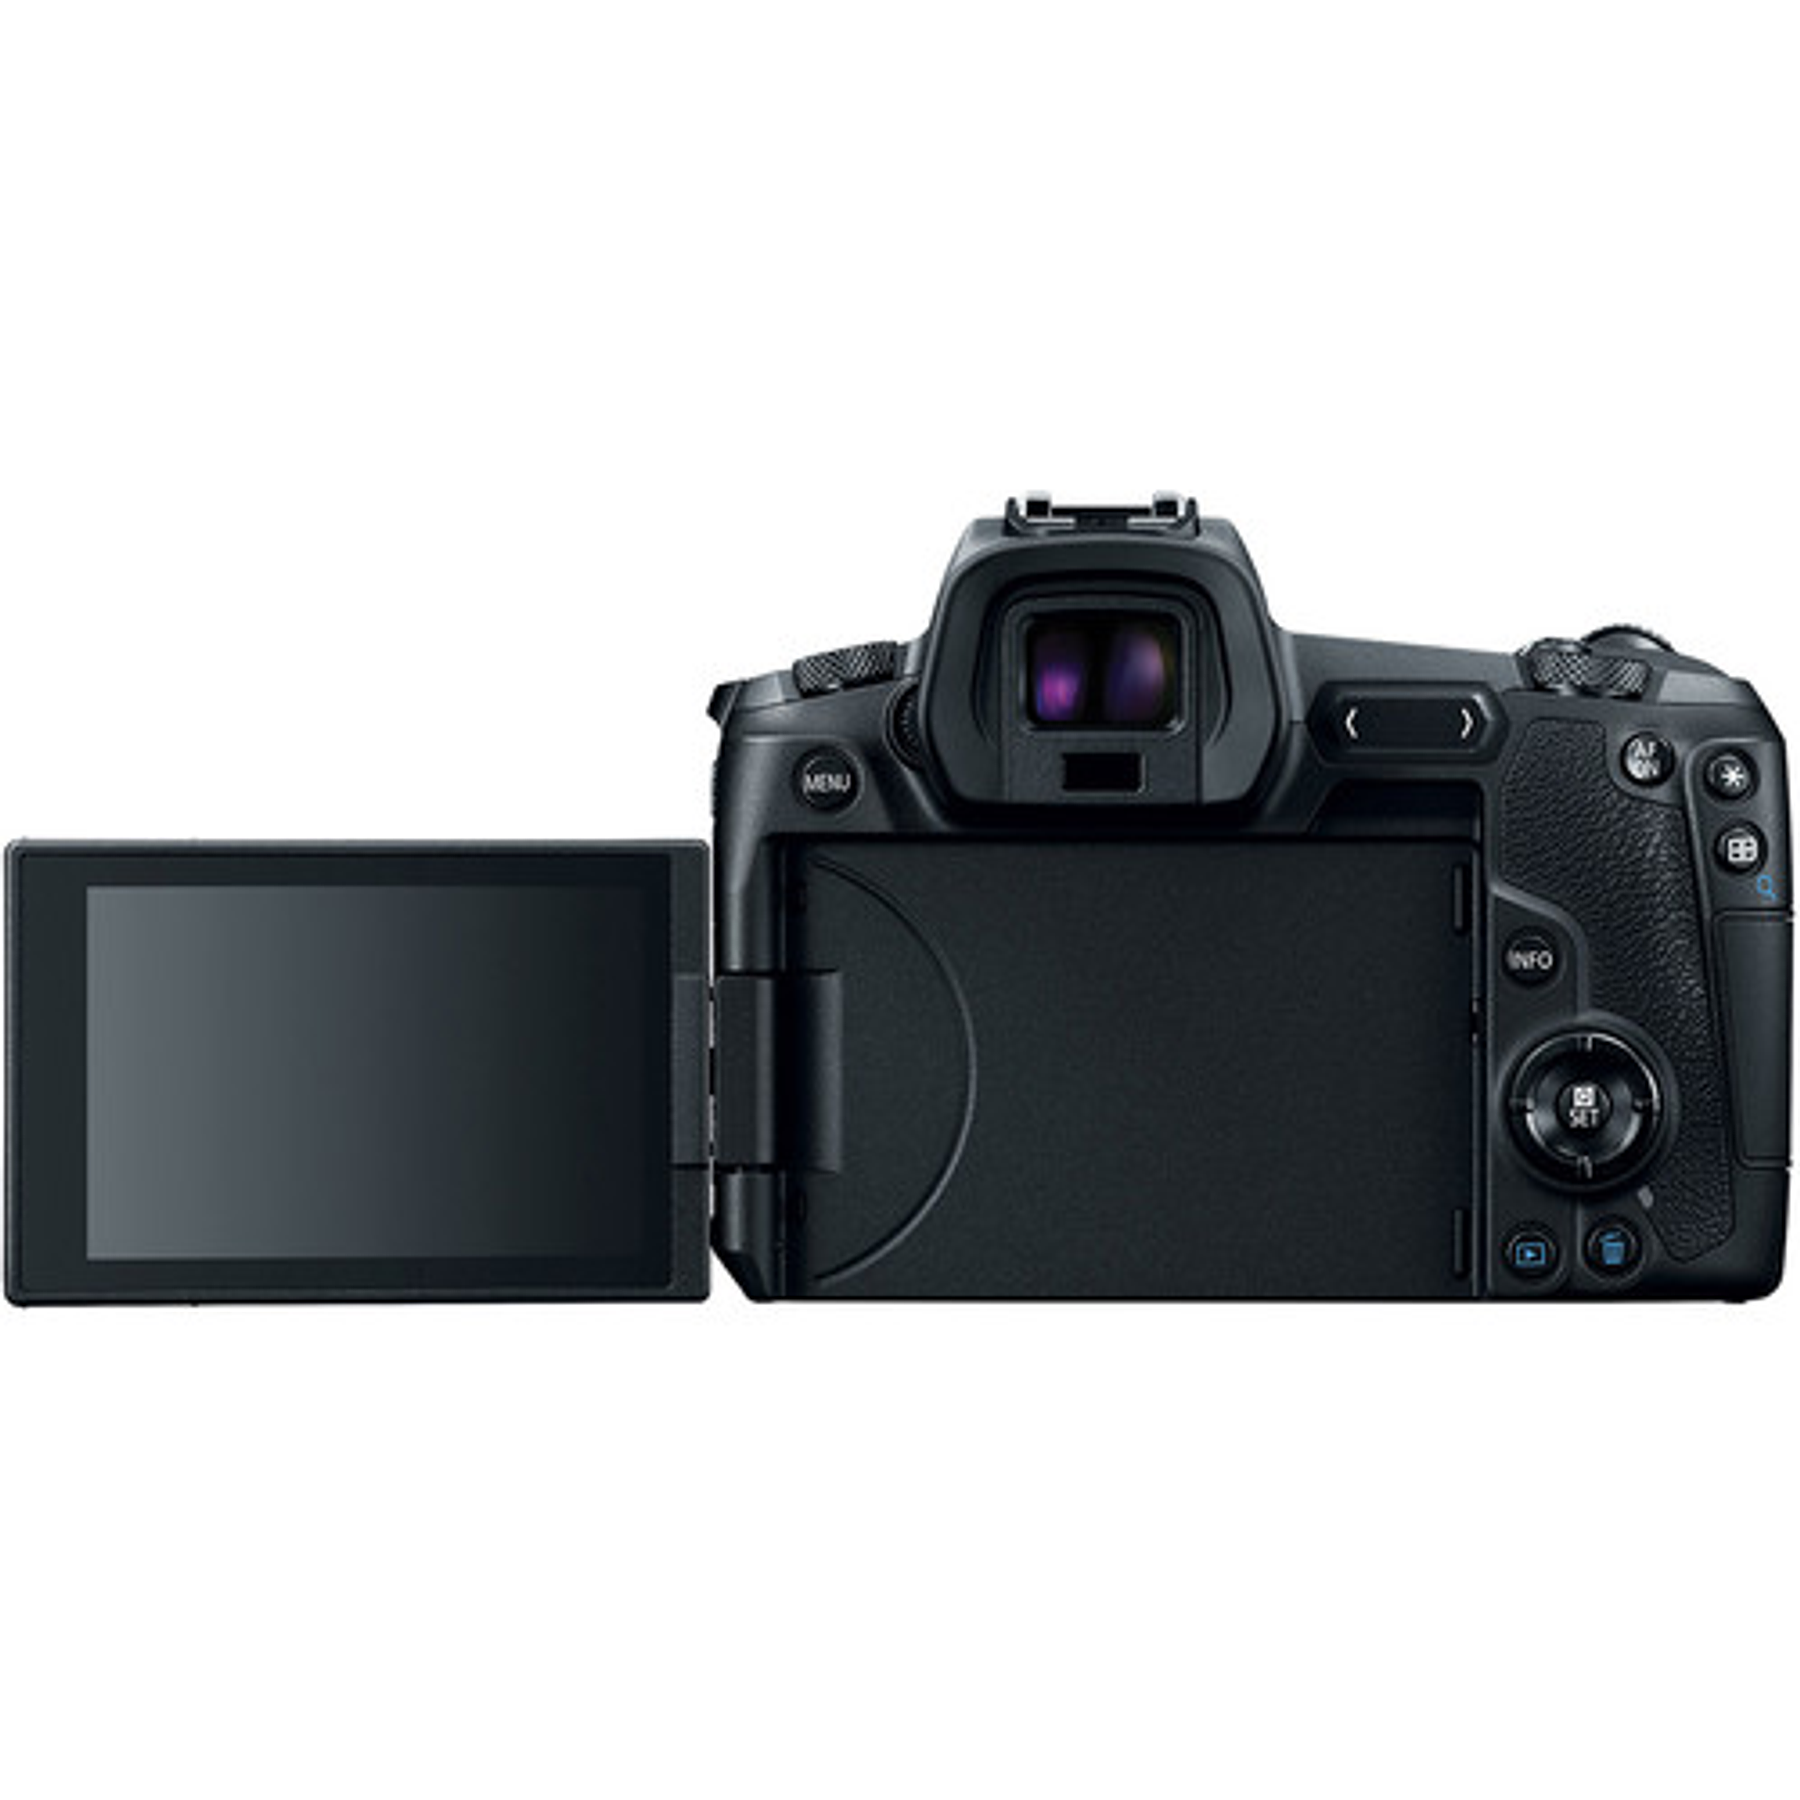 Canon EOS R + 24-105 mm f/4 Mirrorless 